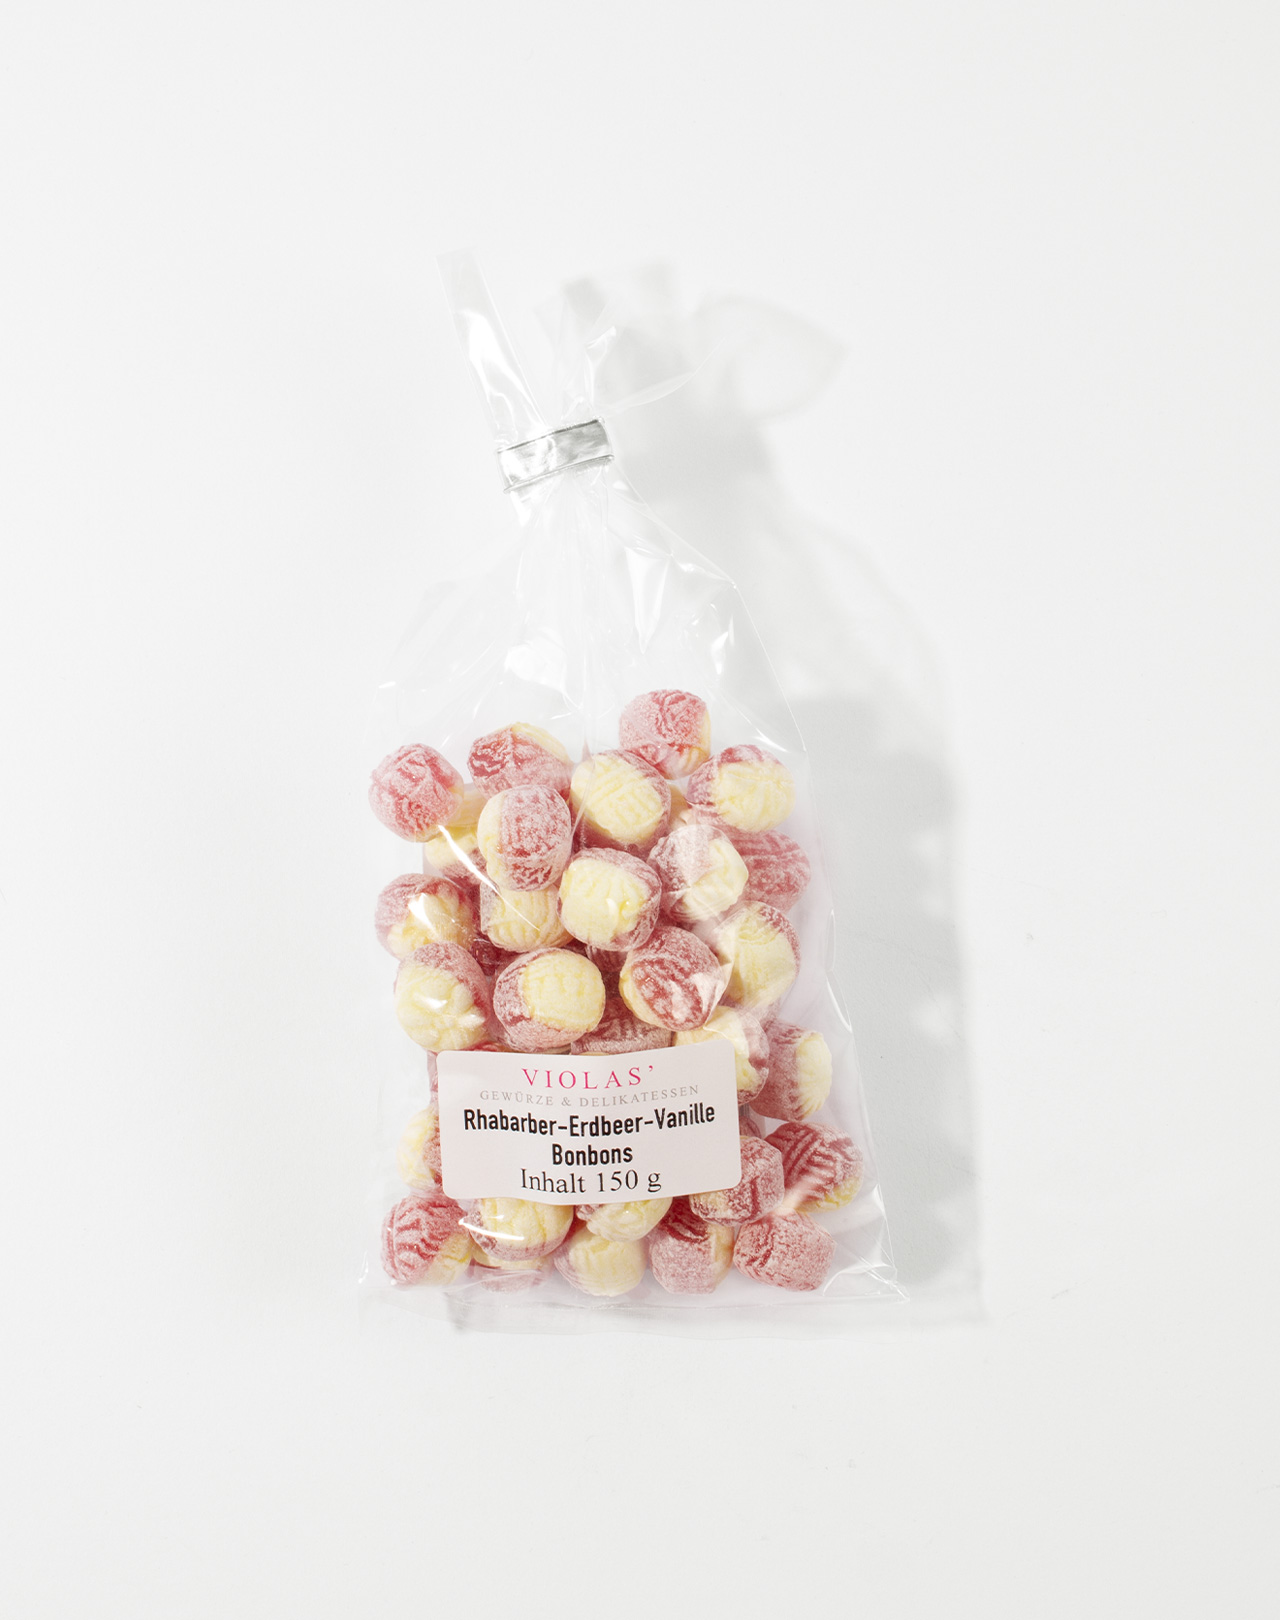 Rhabarber-Erdbeer-Vanille Bonbons